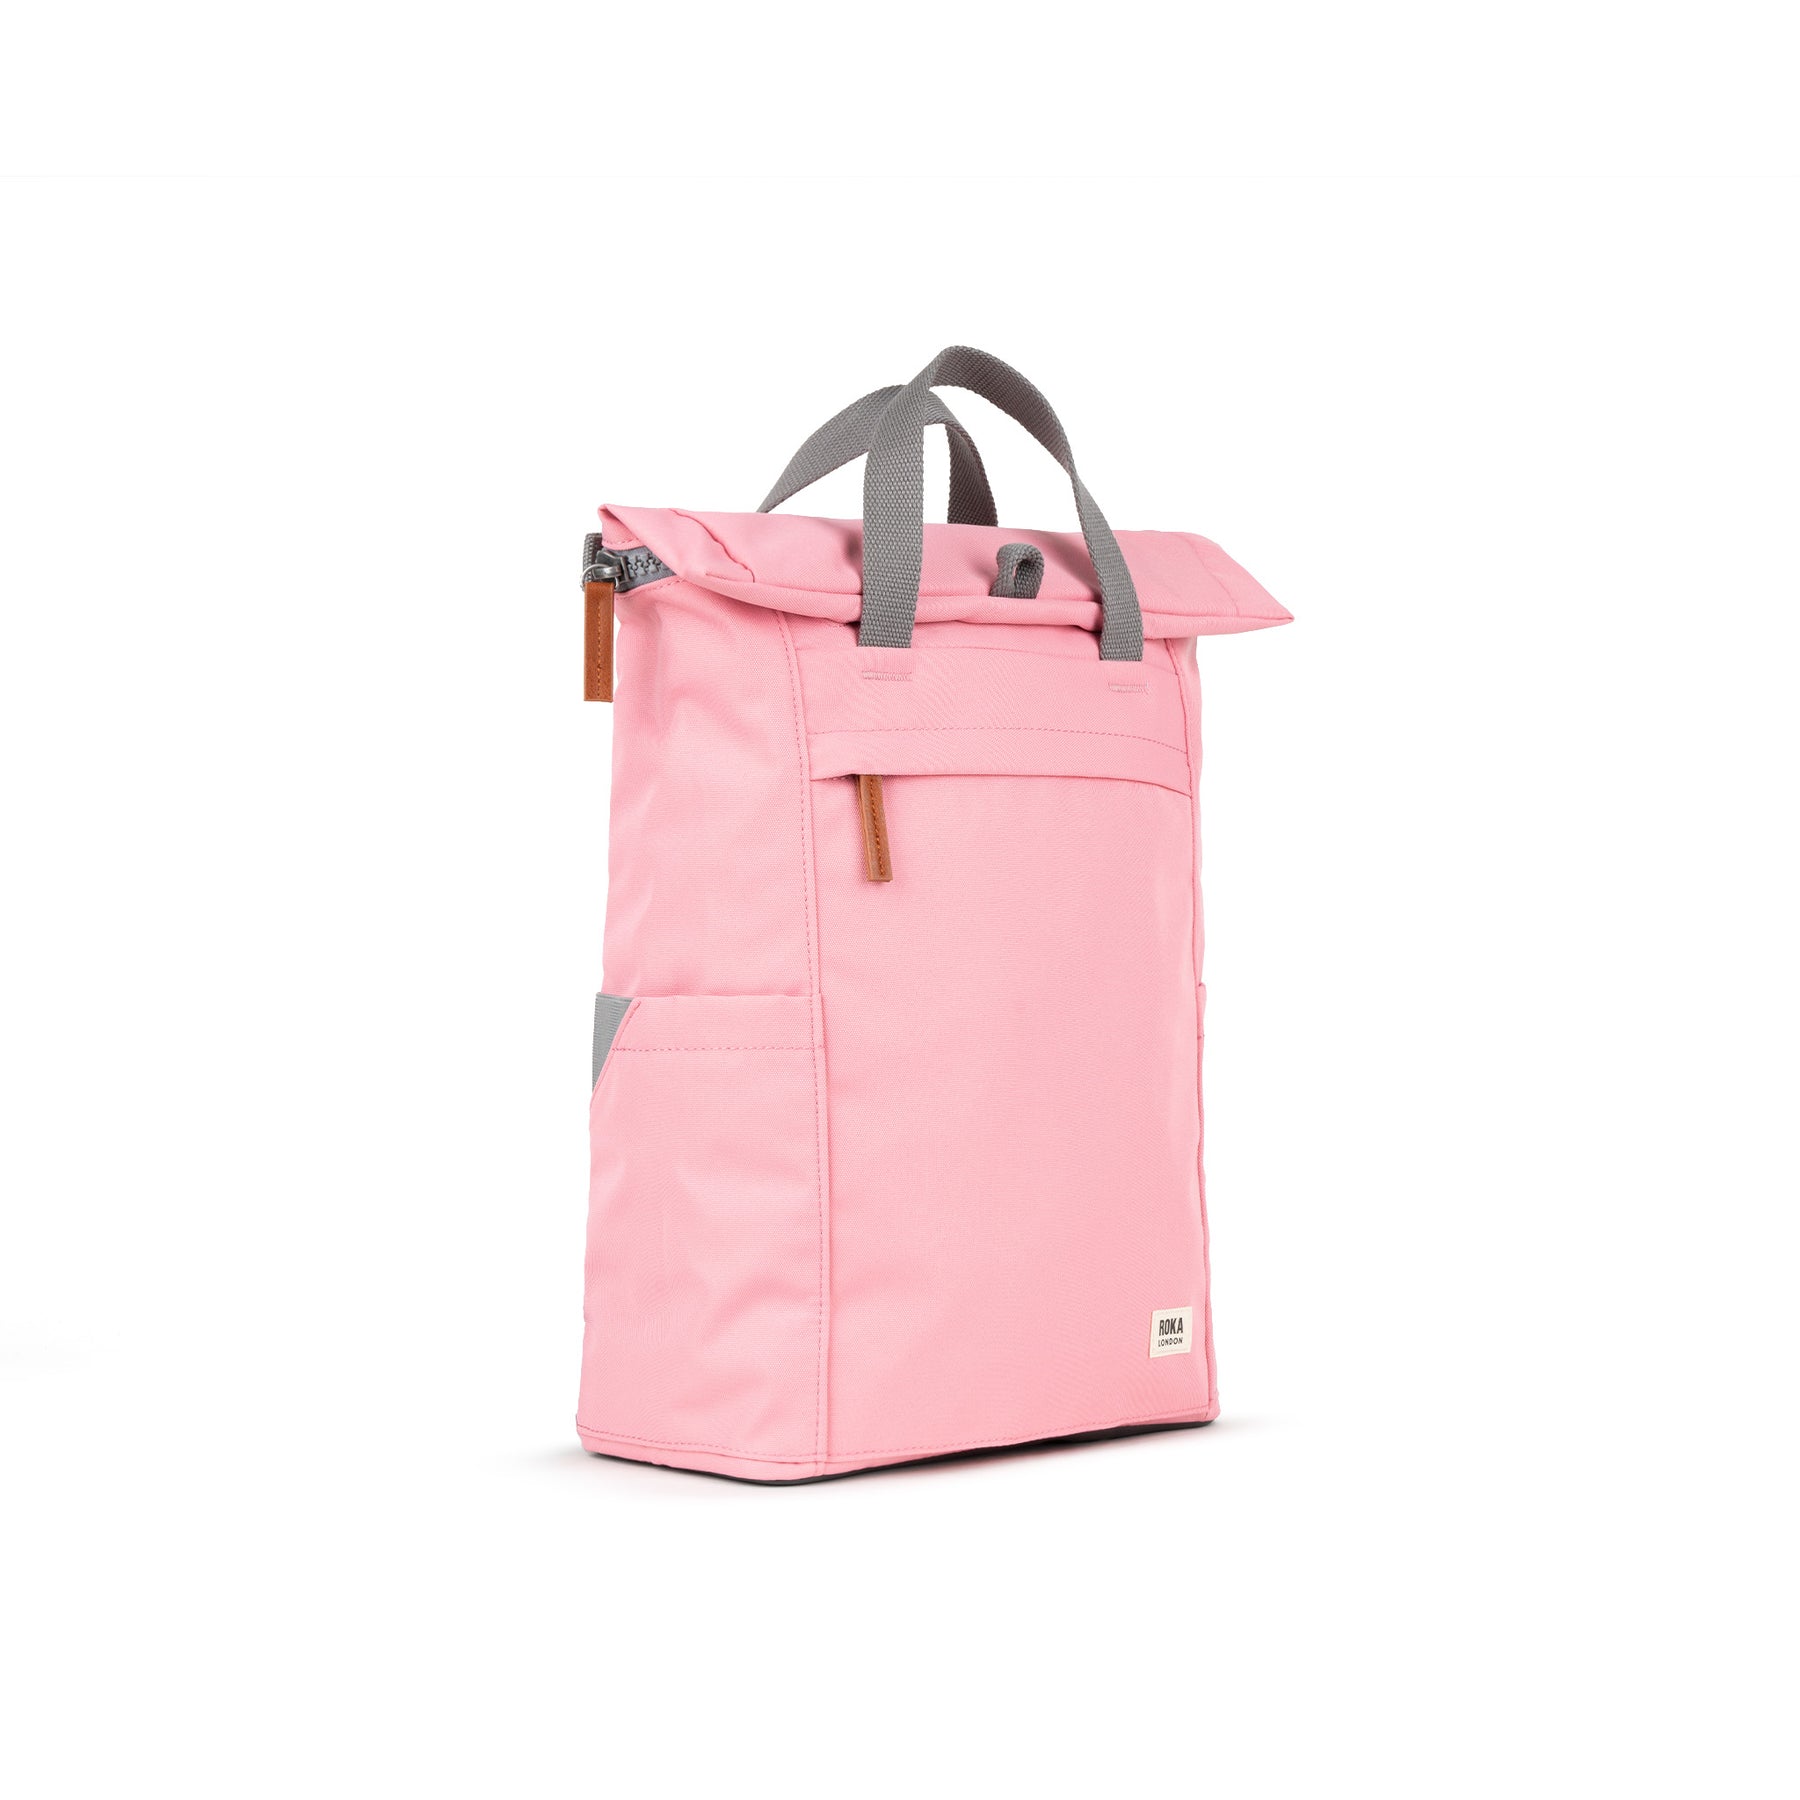 ROKA Finchley A Rose Medium Recycled Canvas Bag